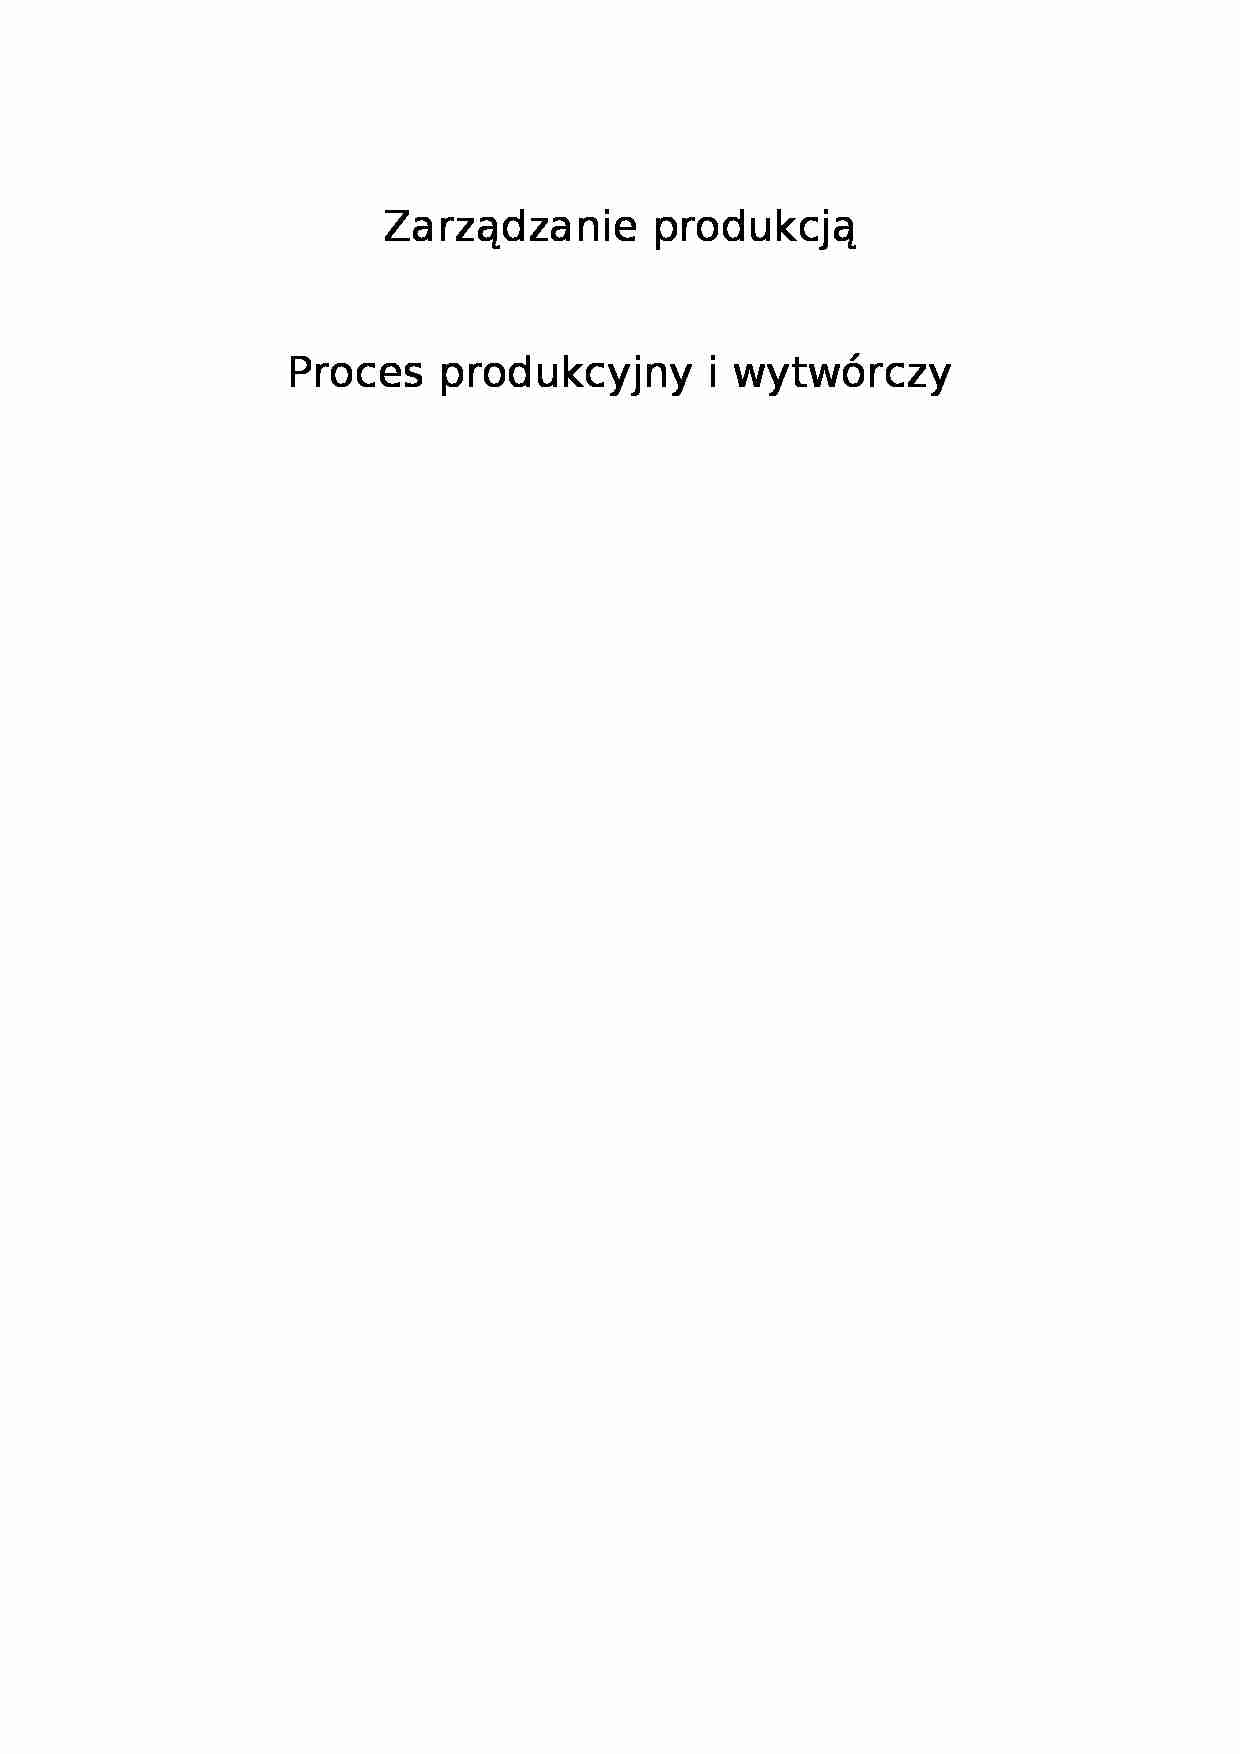 Proces produkcyjny i wytwórczy - proces dystrybucji - strona 1